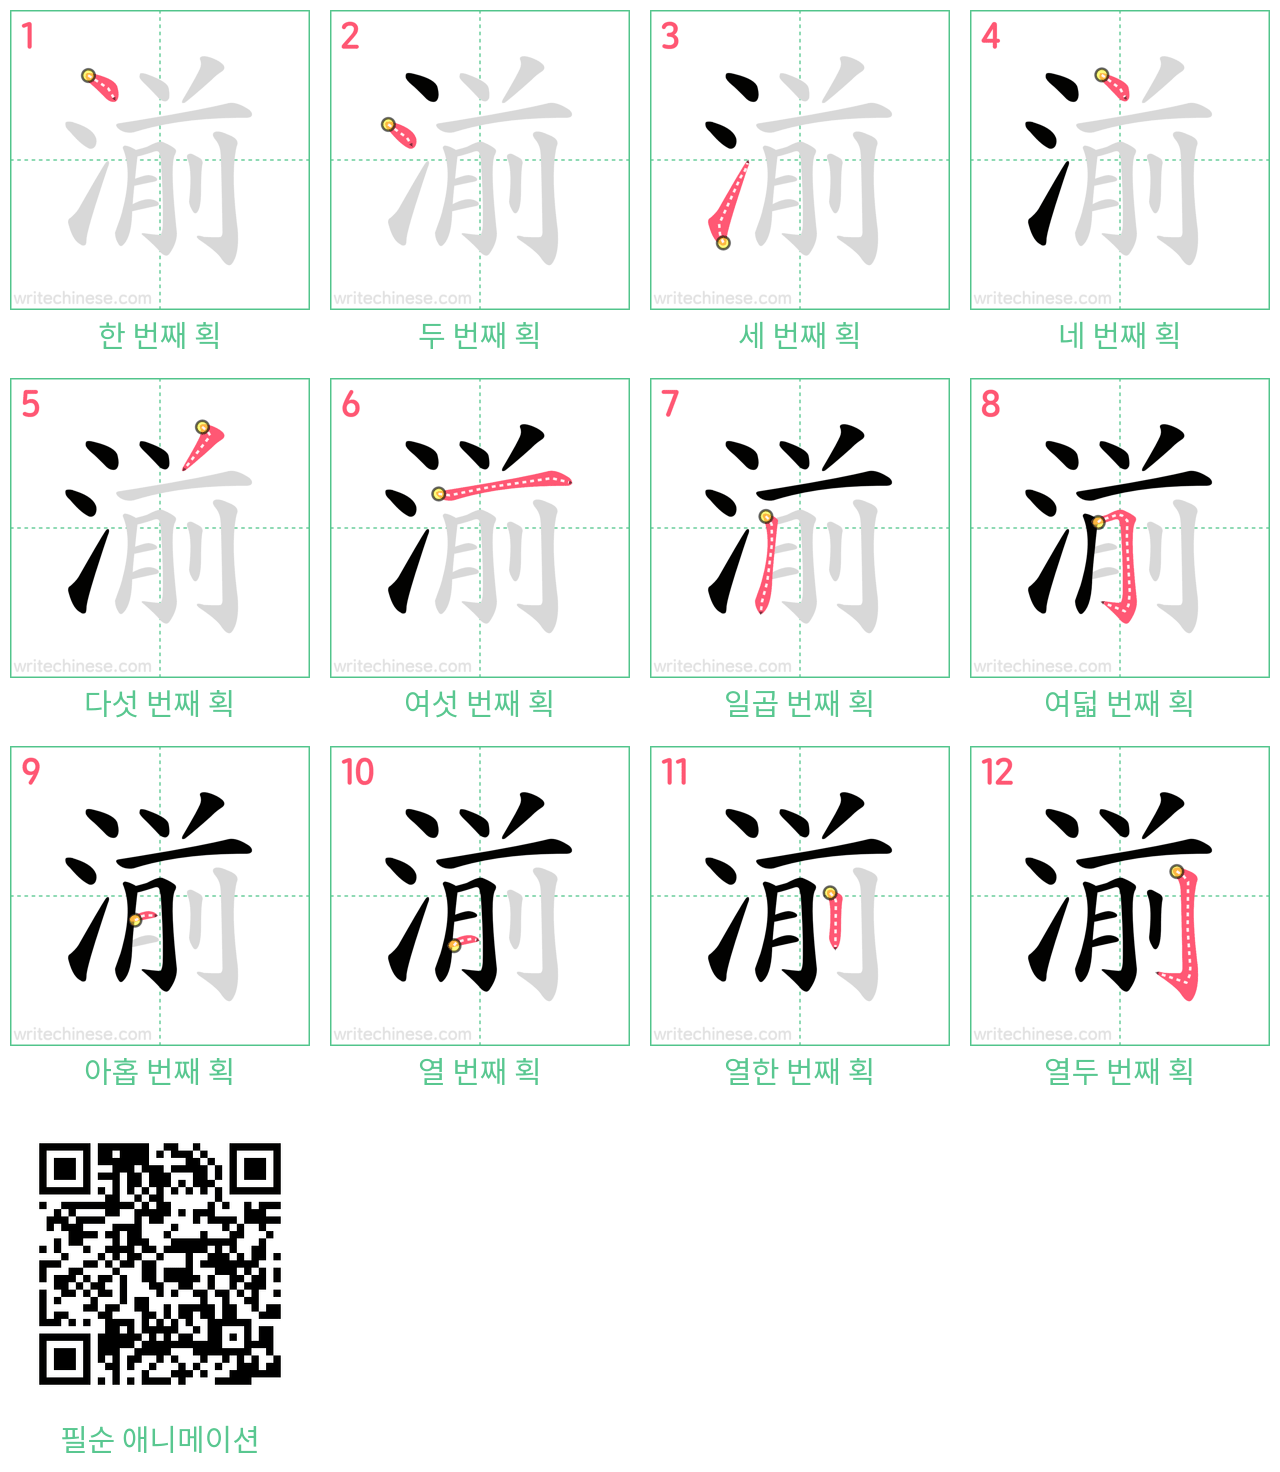 湔 step-by-step stroke order diagrams